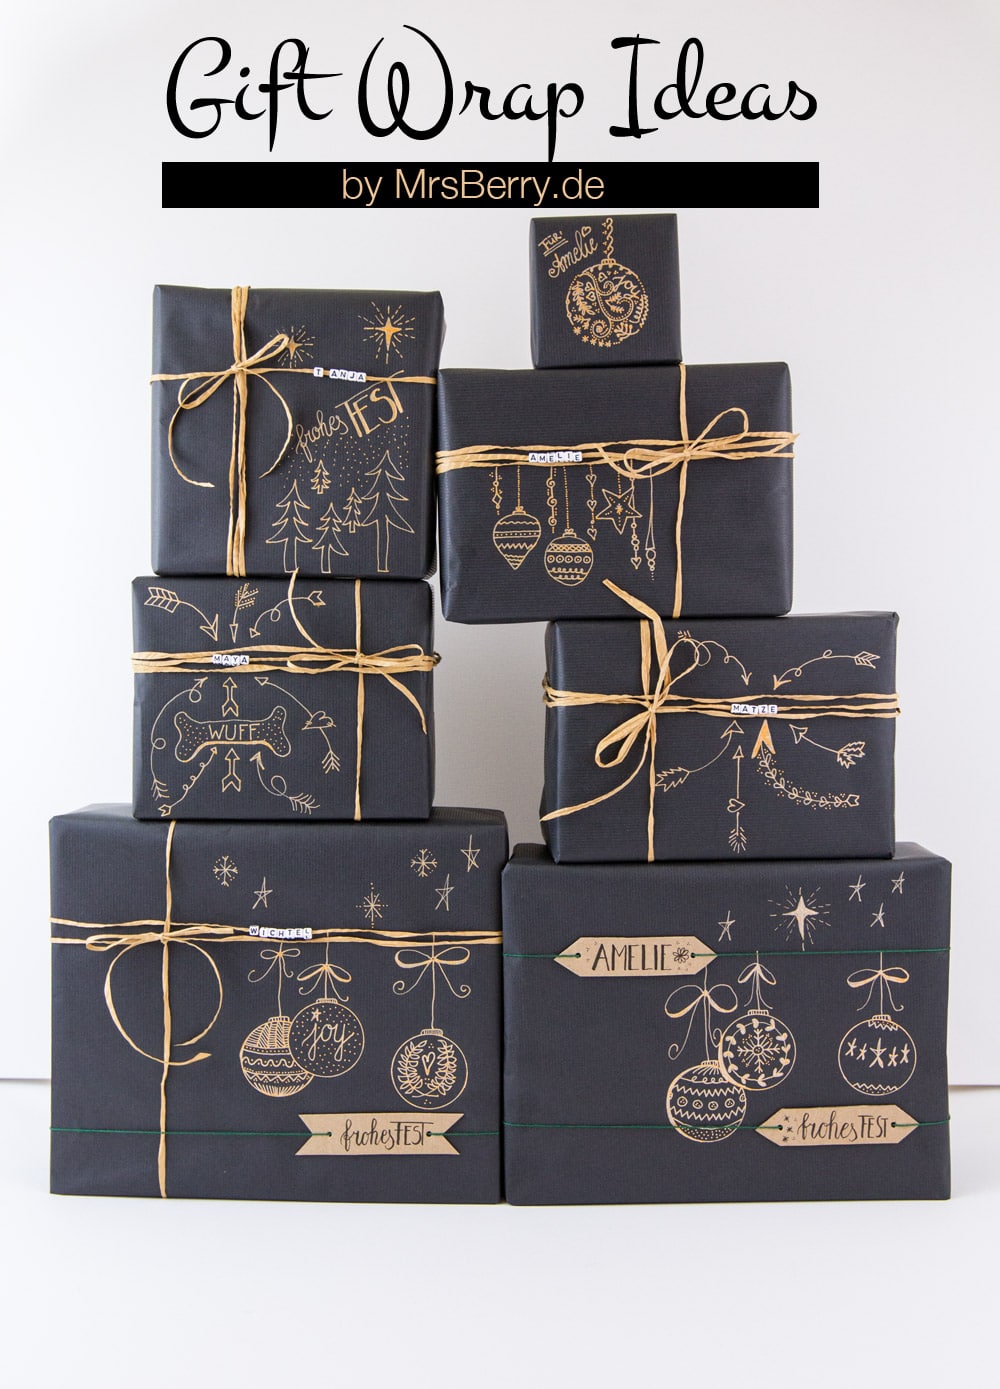 DIY: Geschenke schön verpacken für Weihnachten - mit schwarzem Kraftpapier, Gelschreiber und Buchstabenwürfel